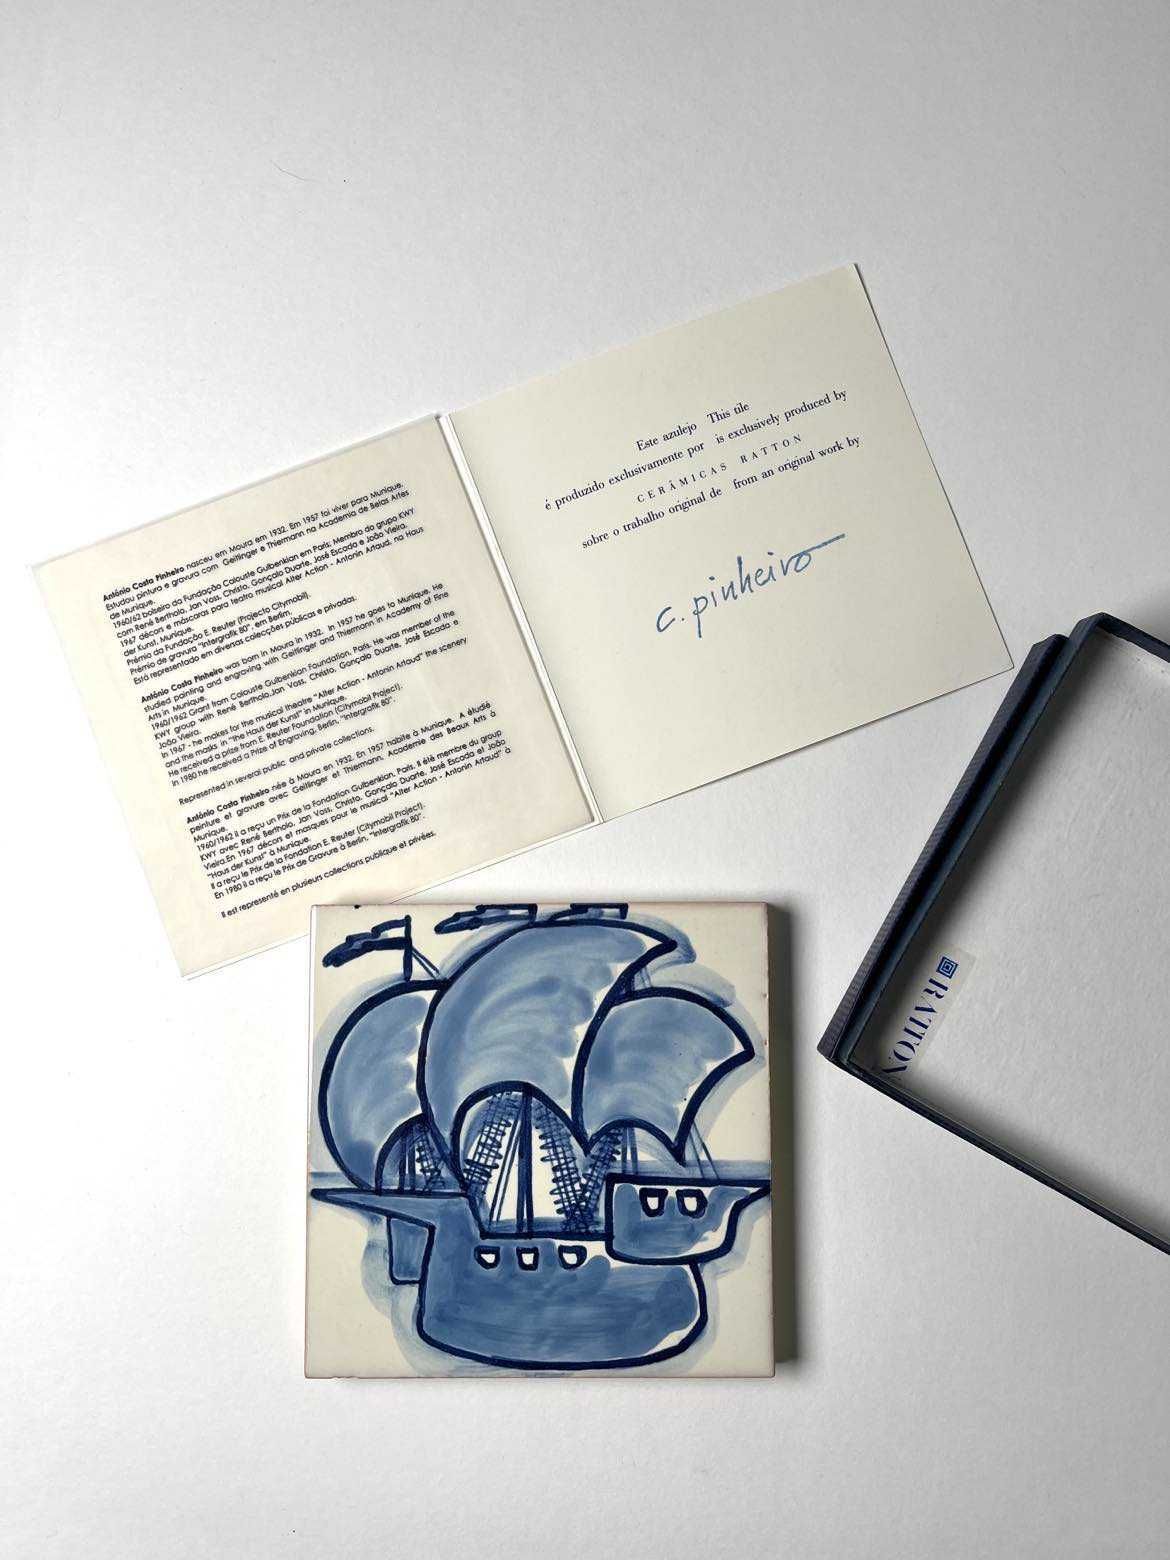 Azulejo de Costa Pinheiro (caixa e certificado - Cerâmicas Ratton)